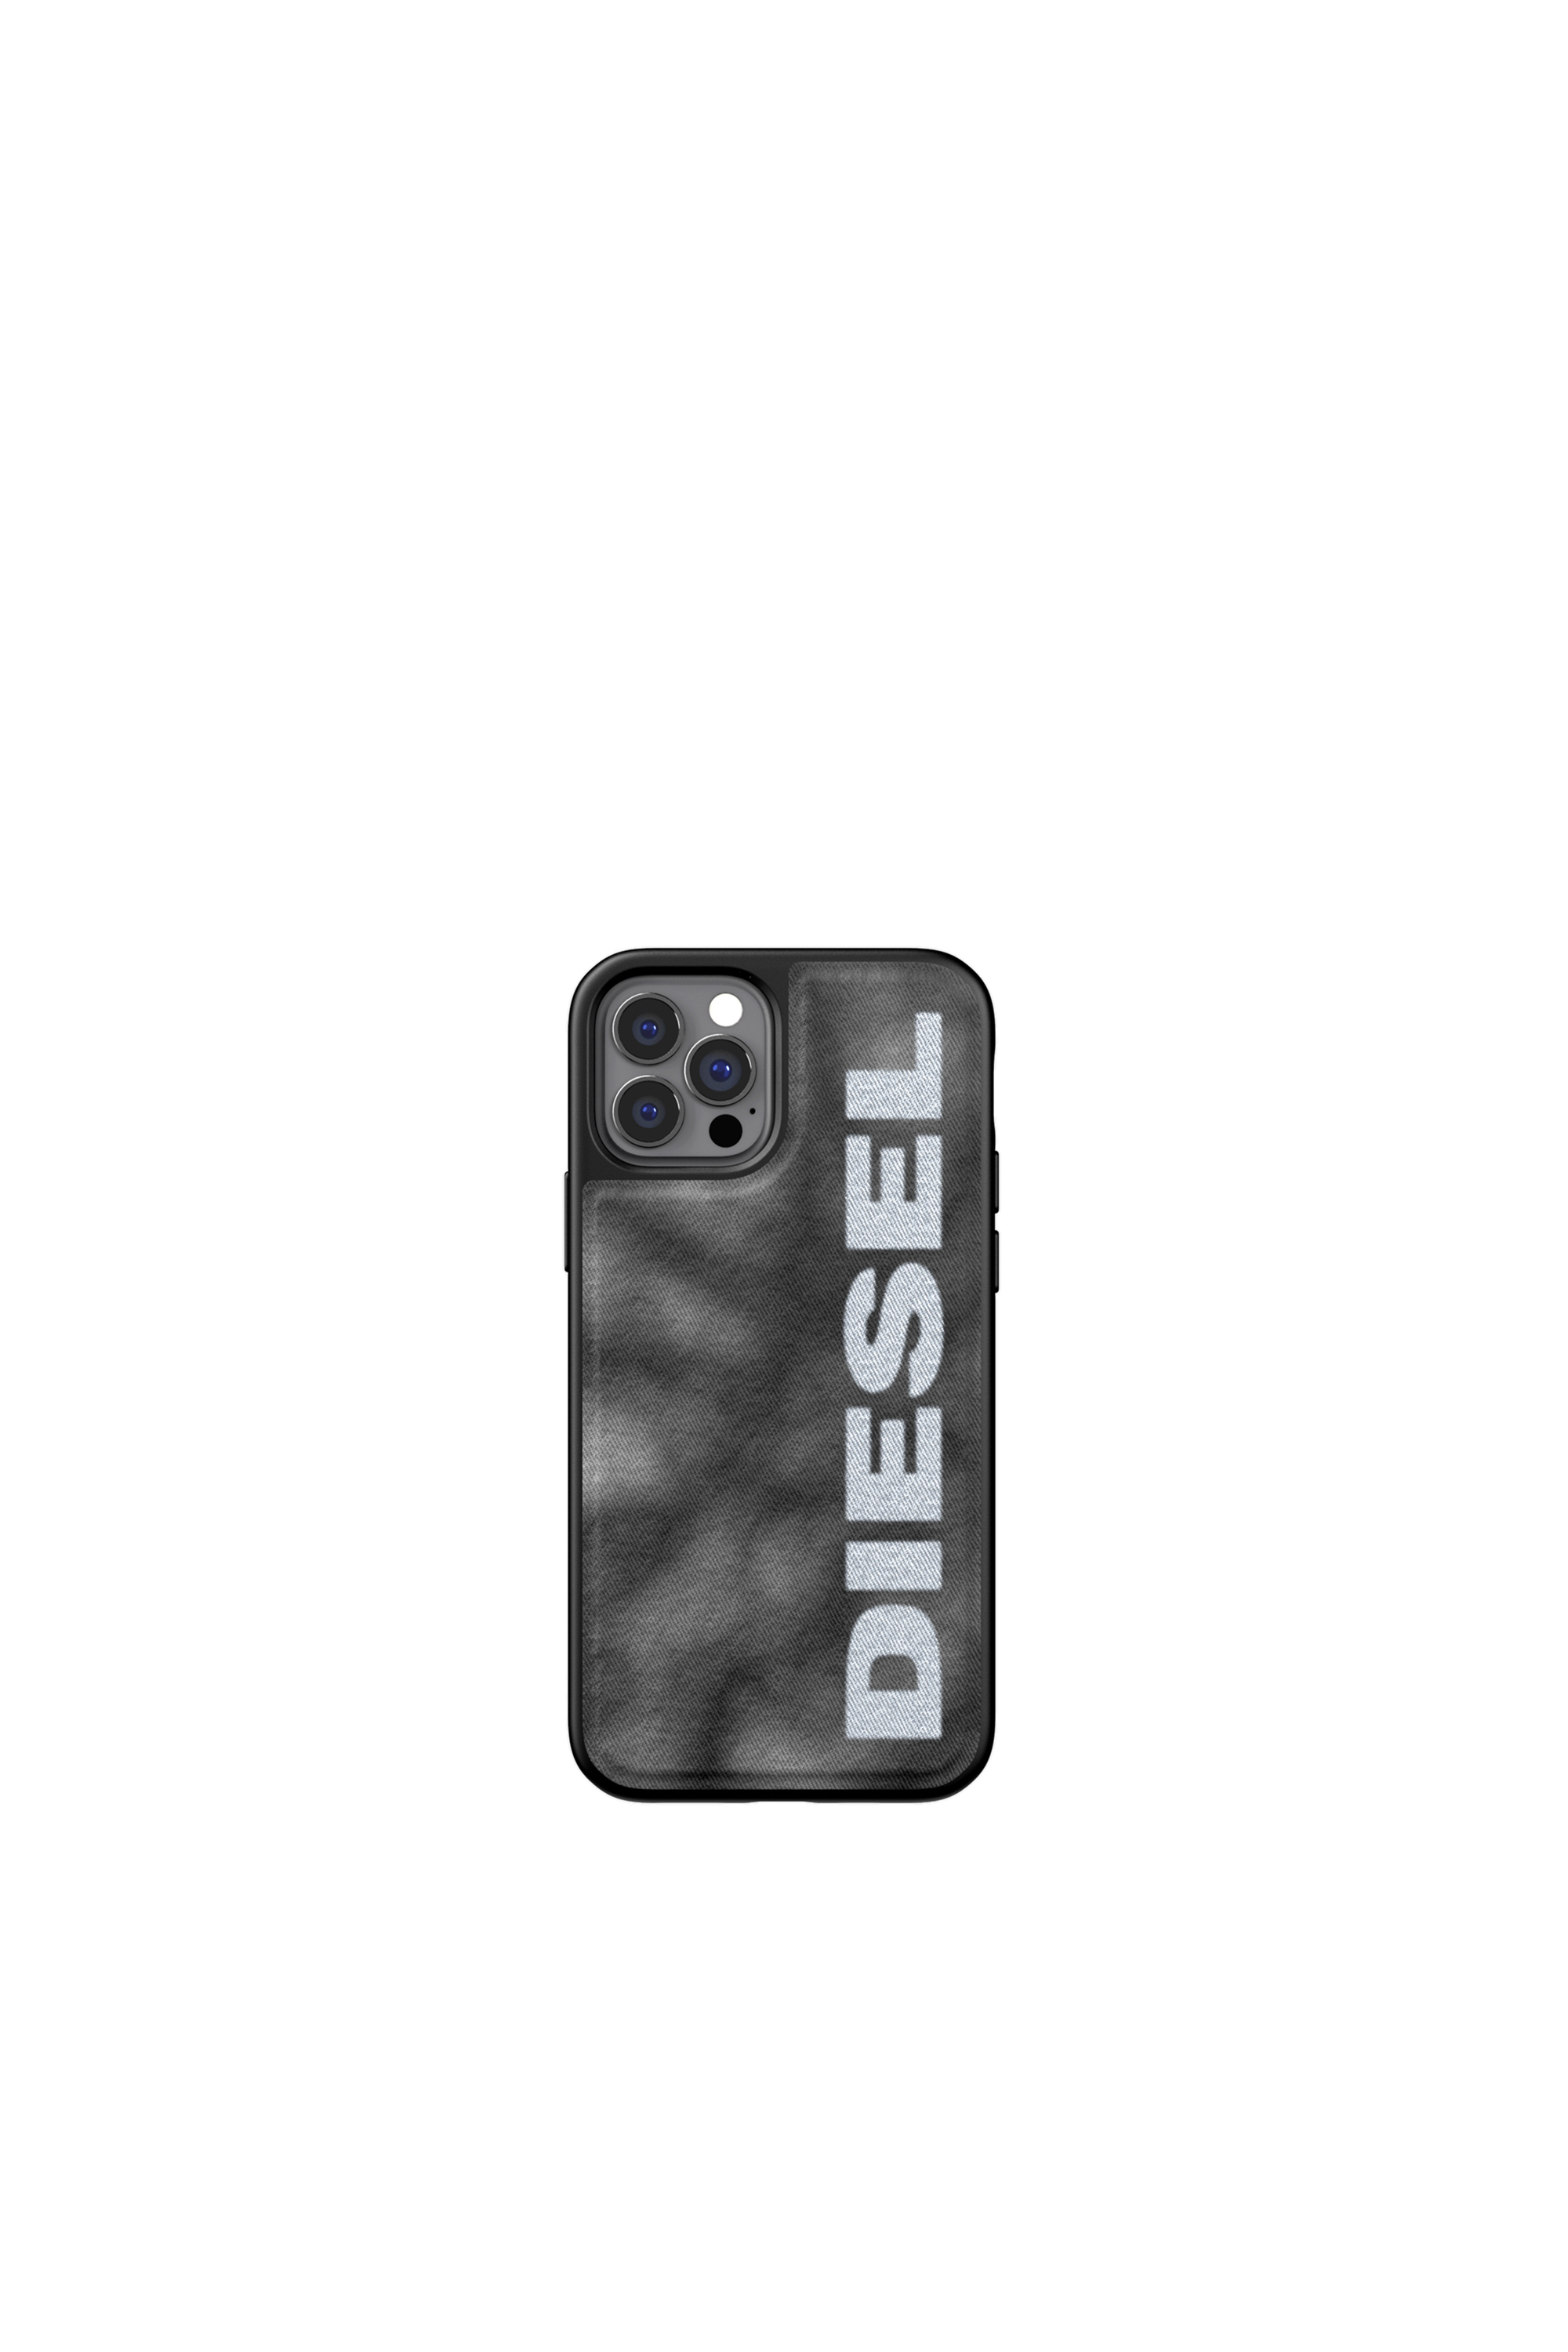 Diesel - 44297   STANDARD CASES, Black/Grey - Image 2